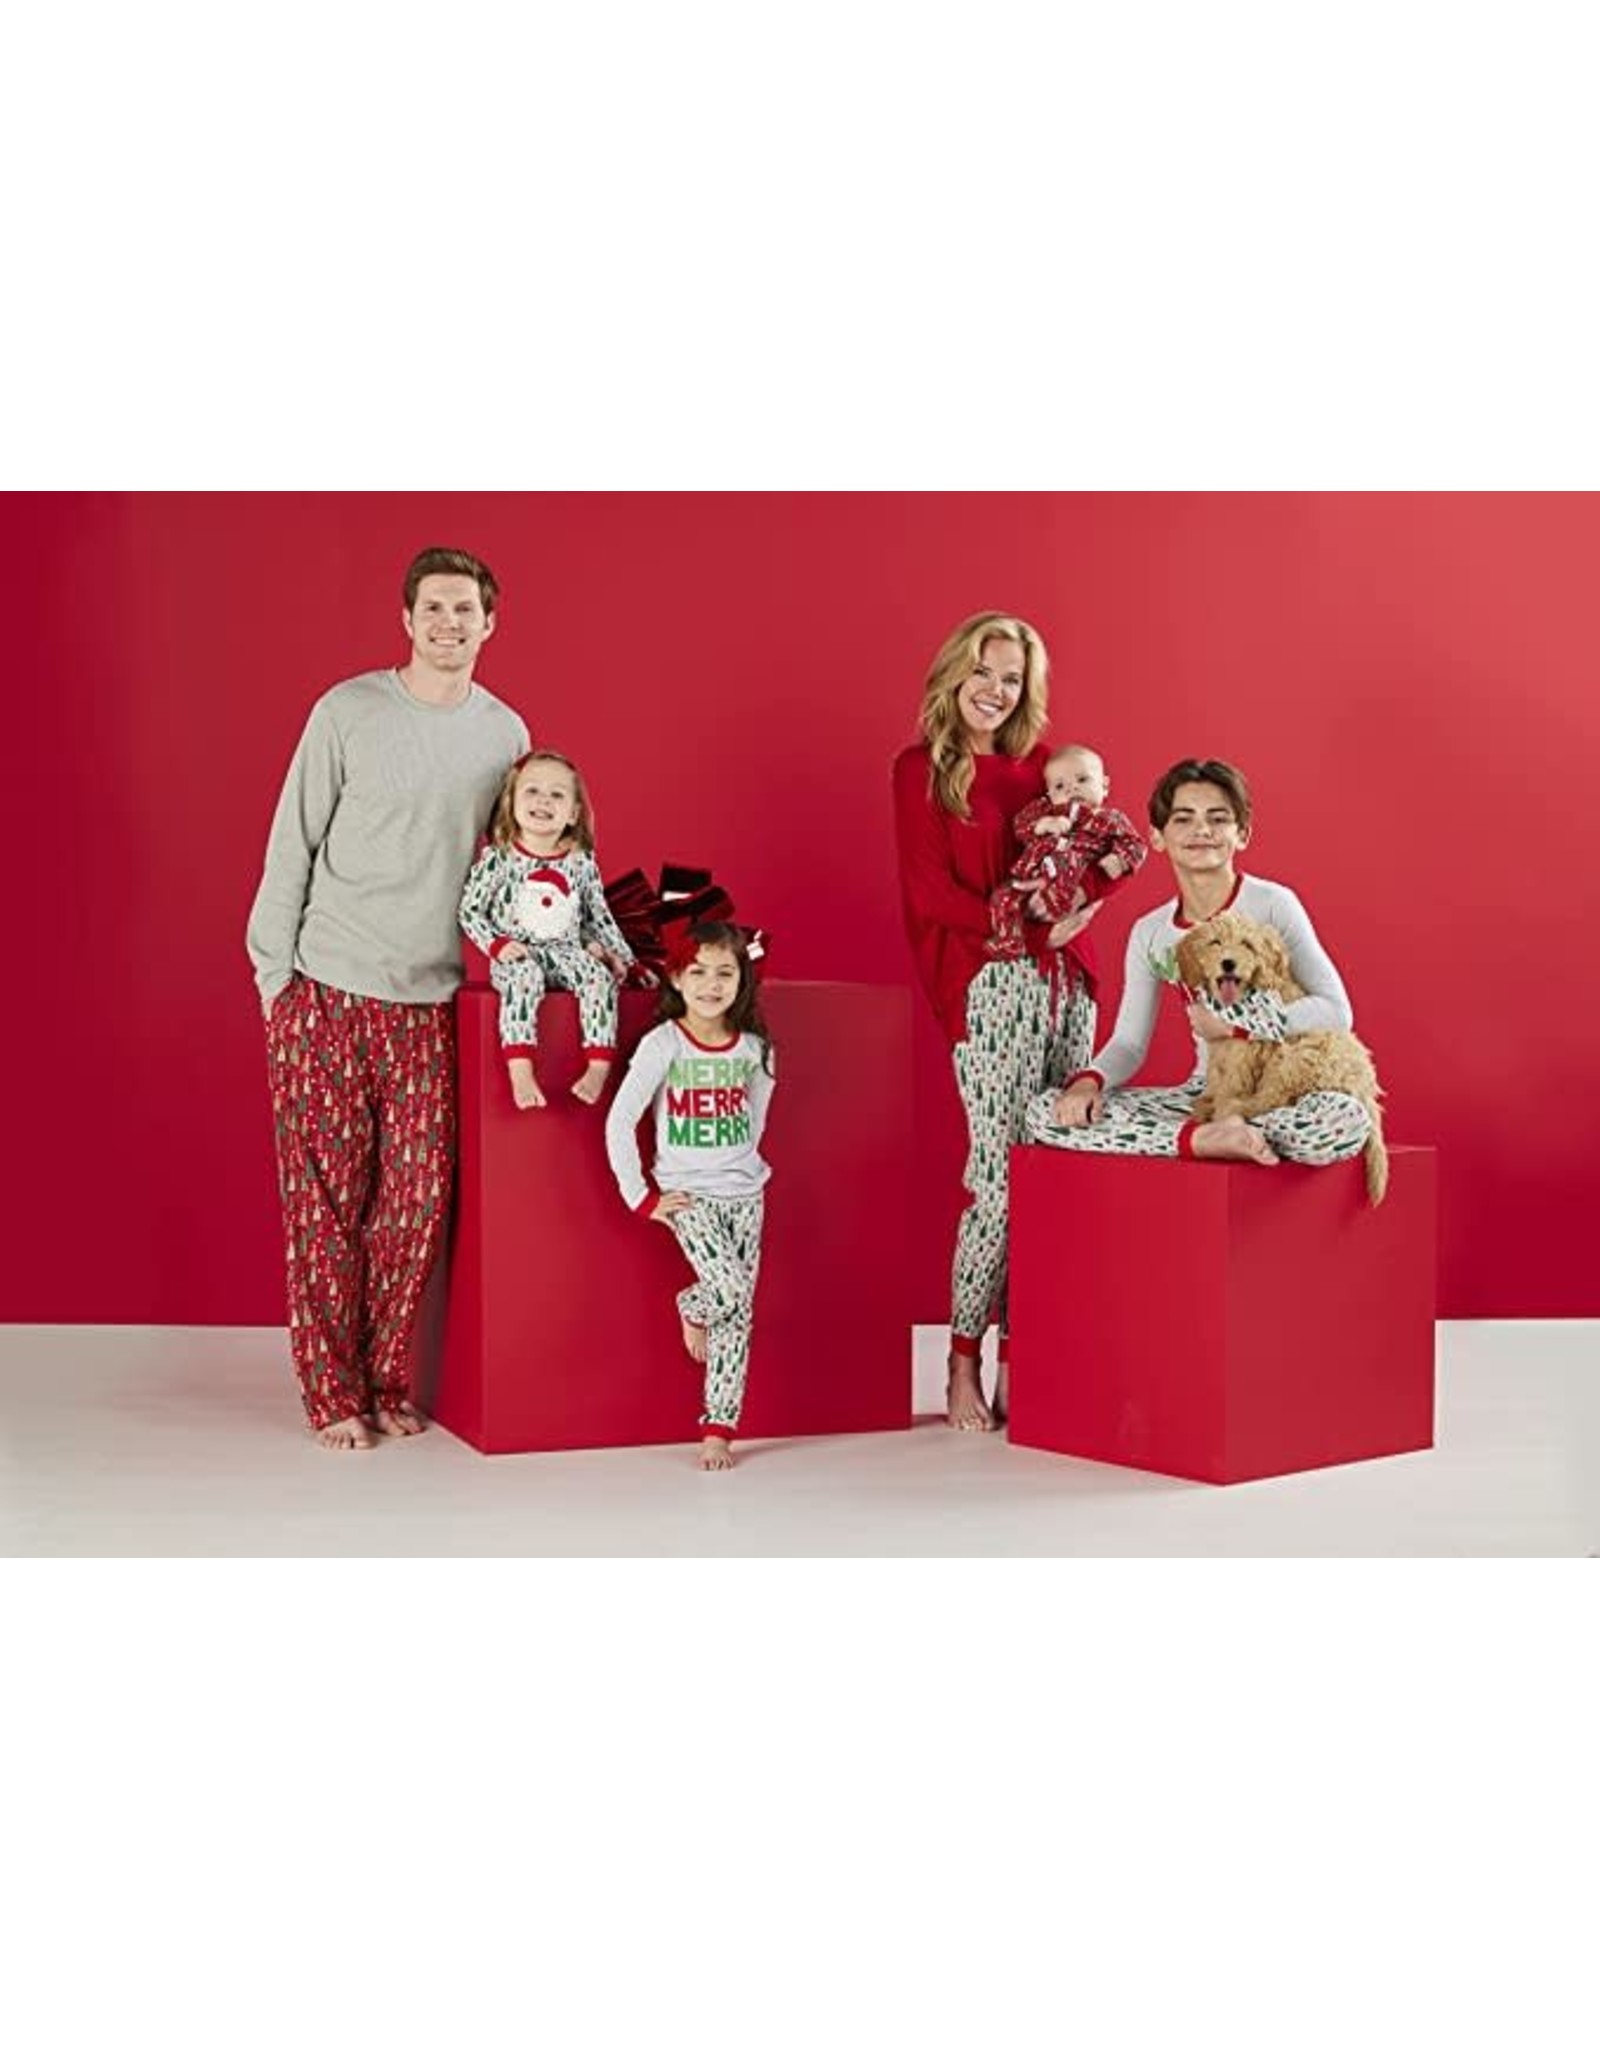 Mud Pie Christmas Sleepwear Family Pajamas 2pc Womens XL